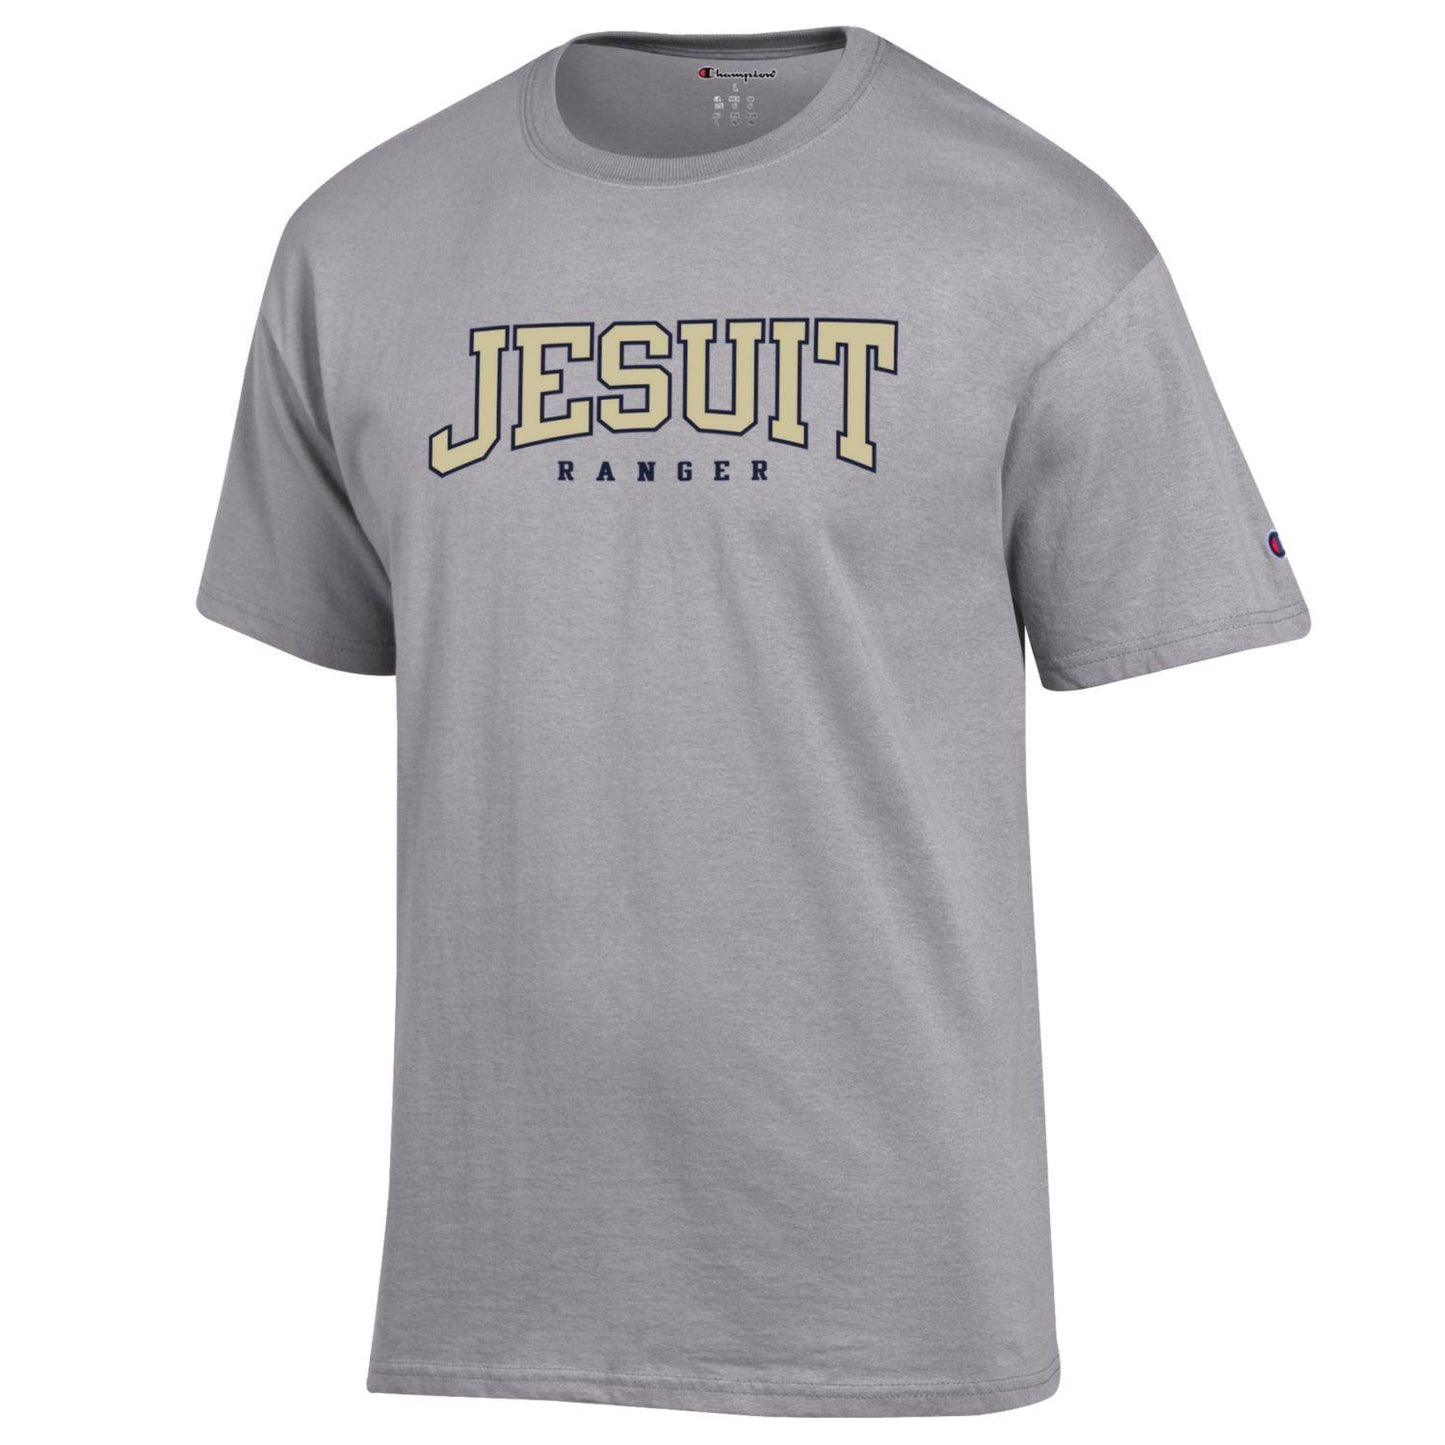 Jesuit Rangers Cotton Champion T-shirt